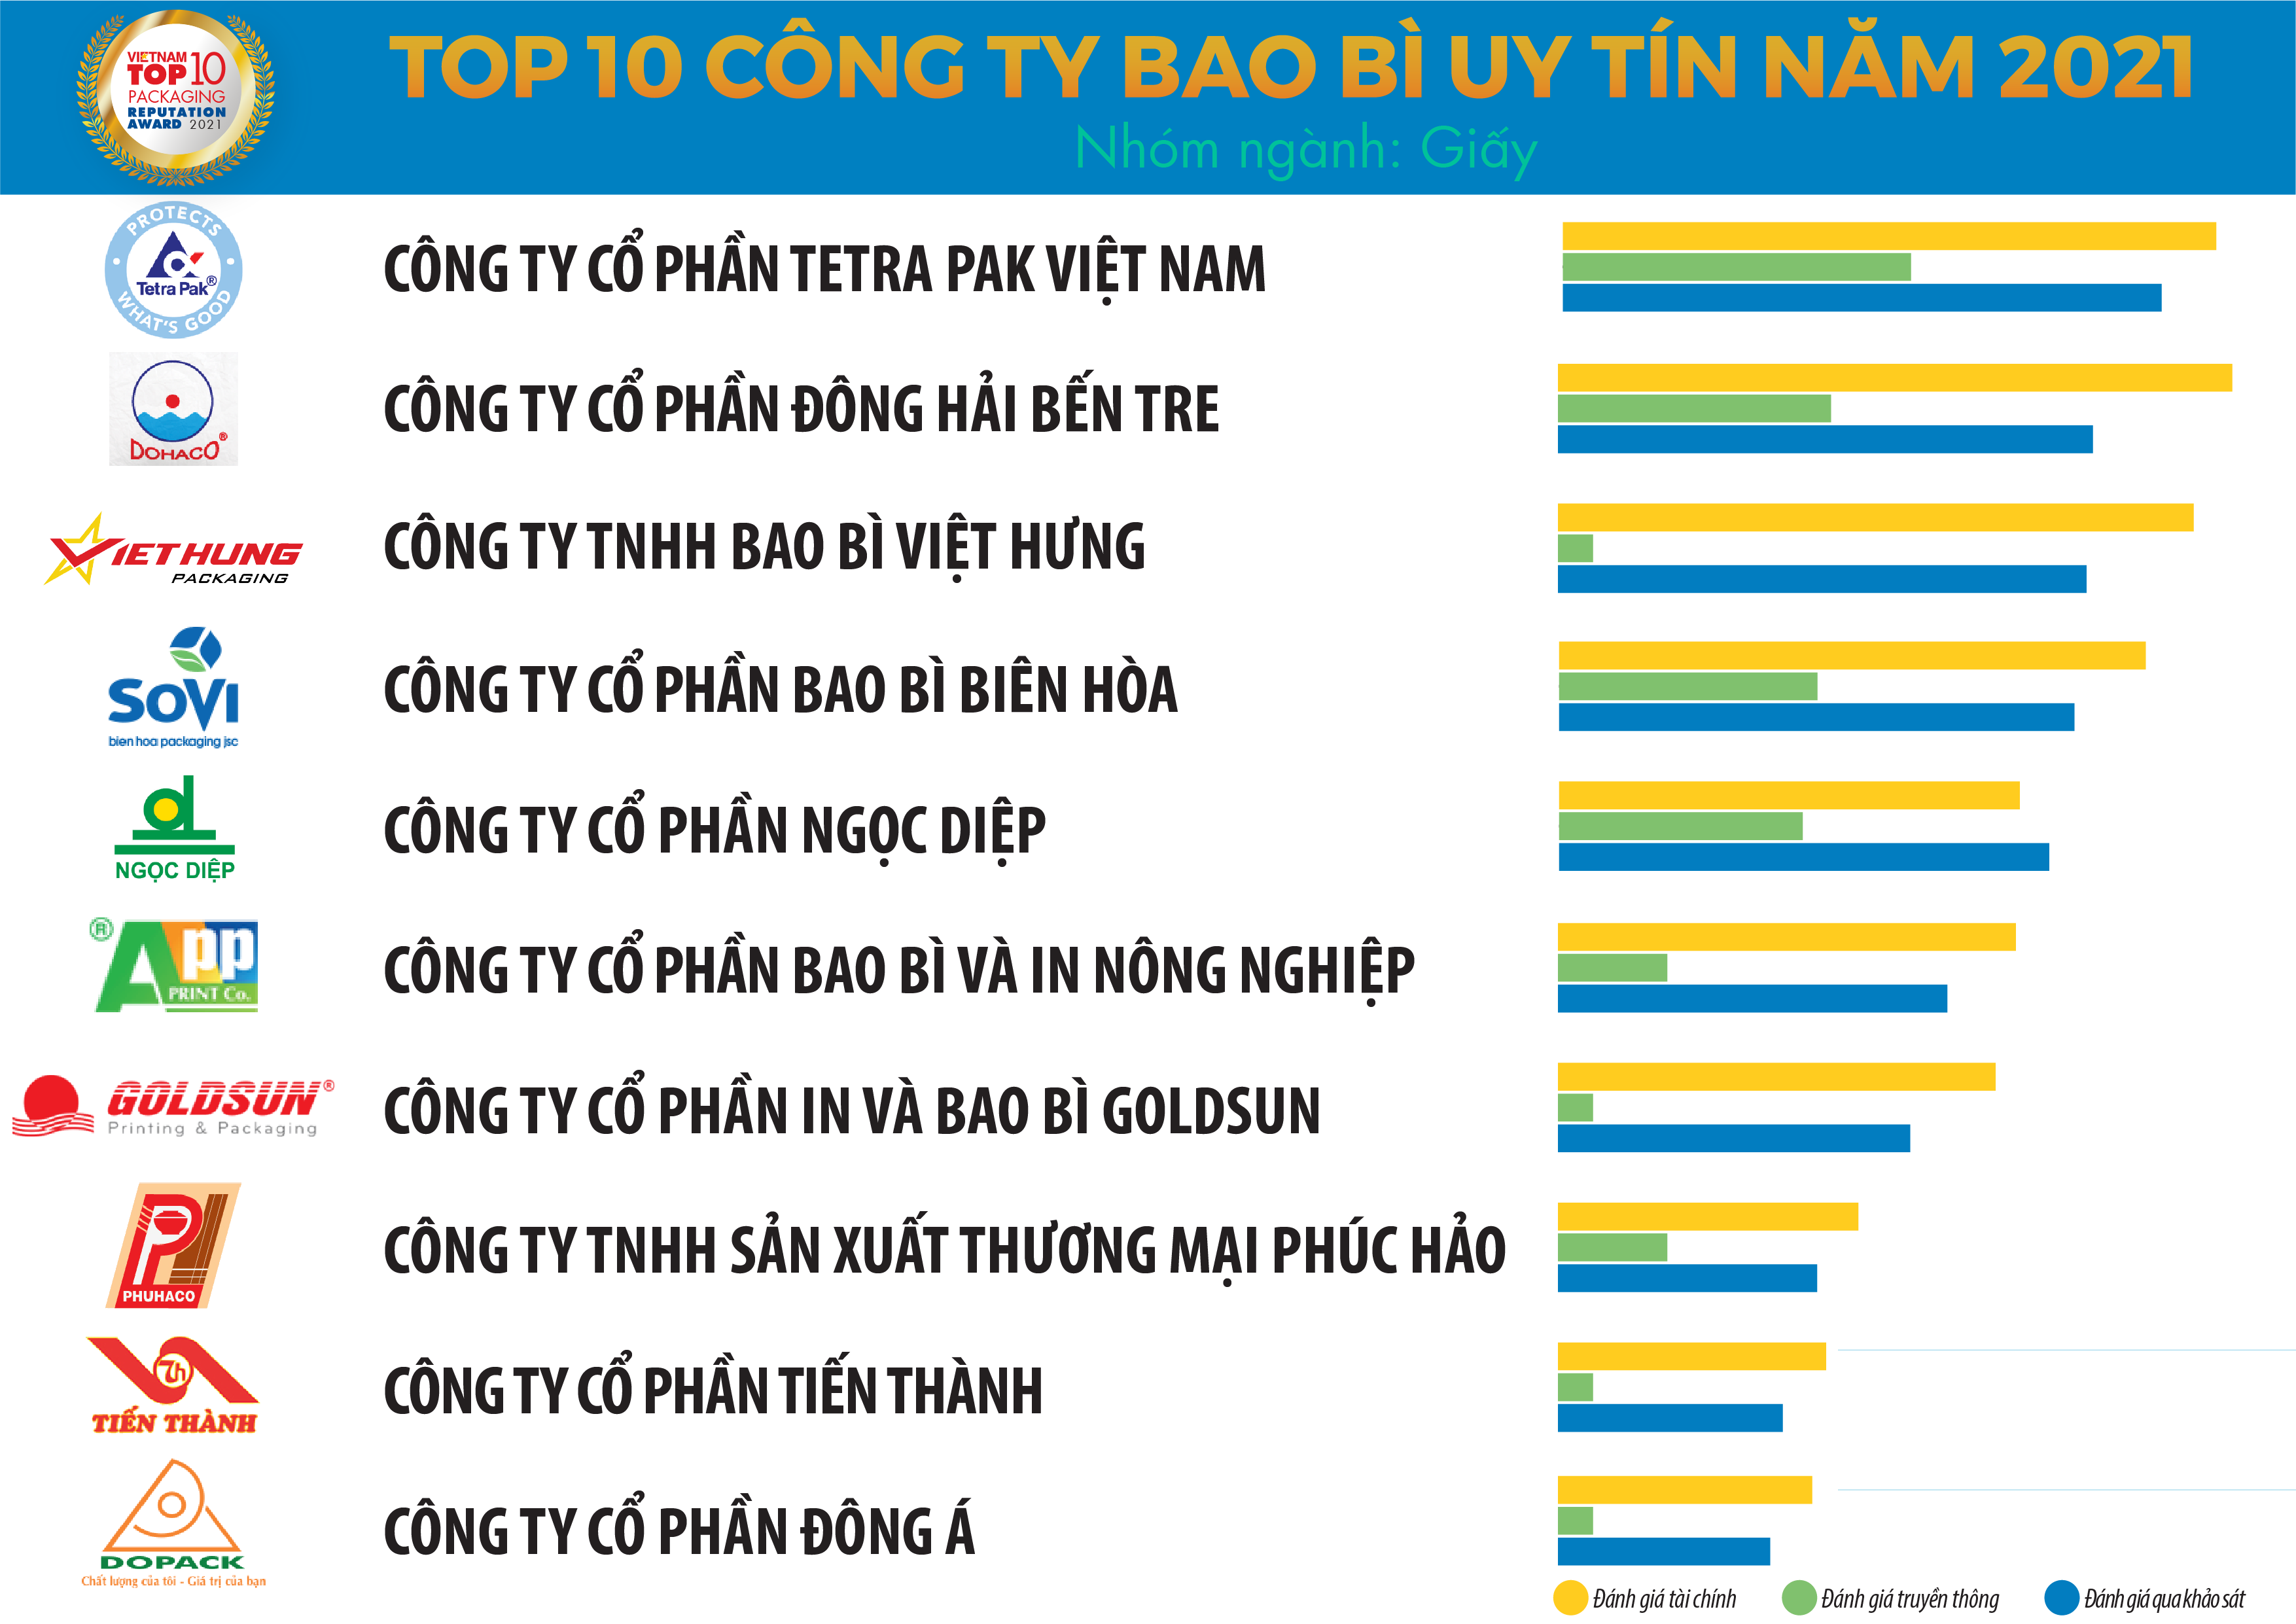 Top 10 Công ty Bao bì uy tín năm 2021